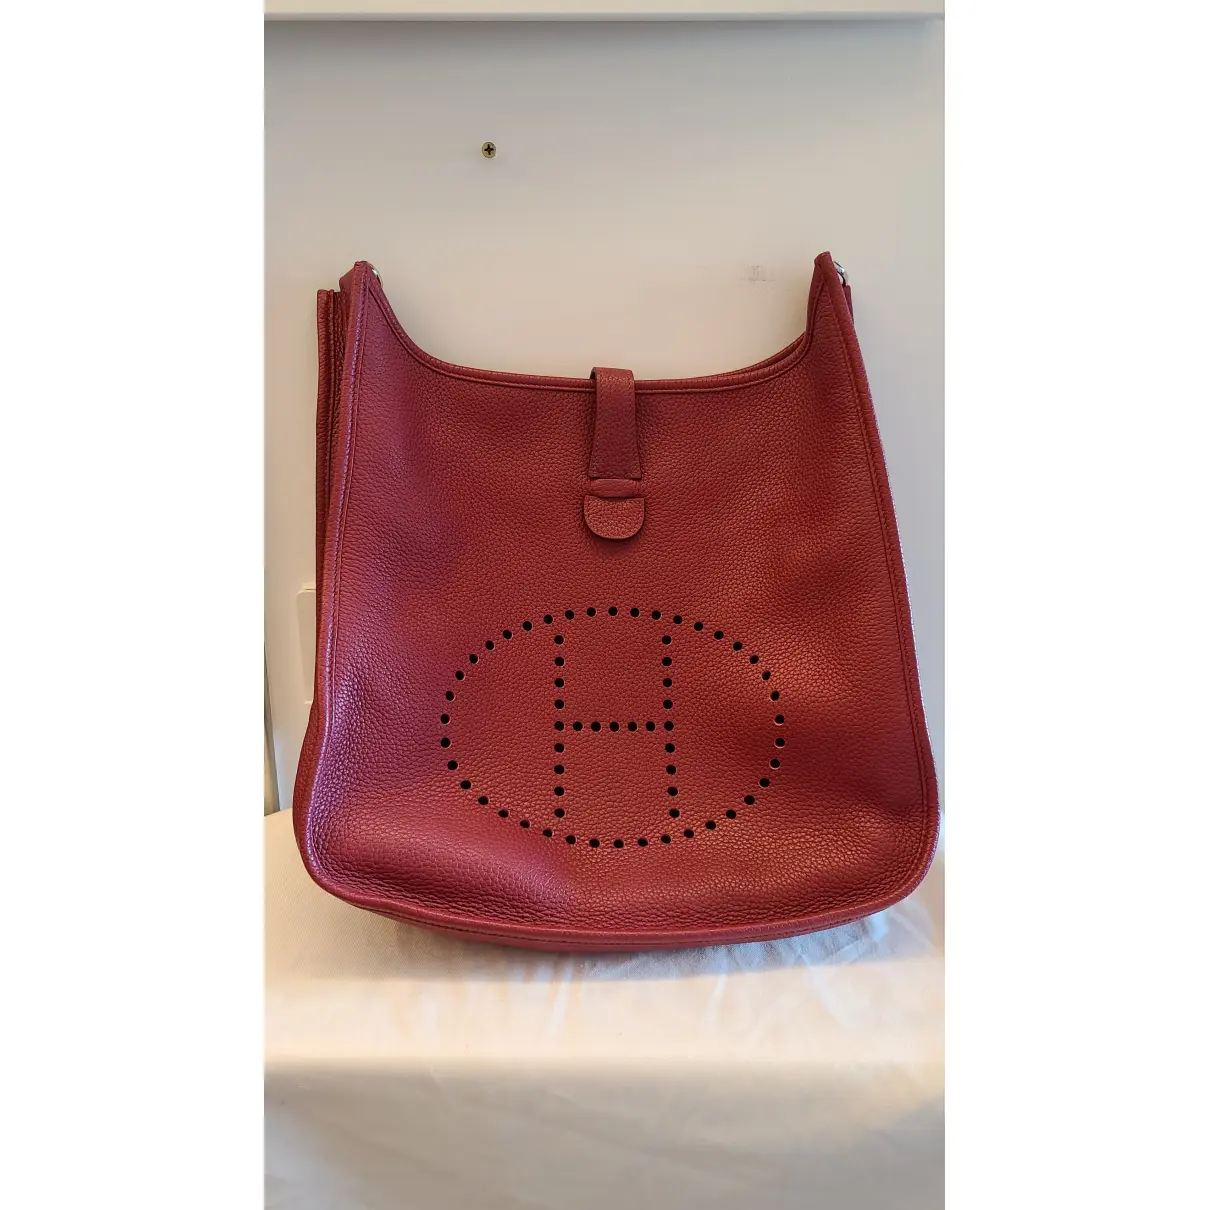 Buy Hermès Evelyne leather handbag online